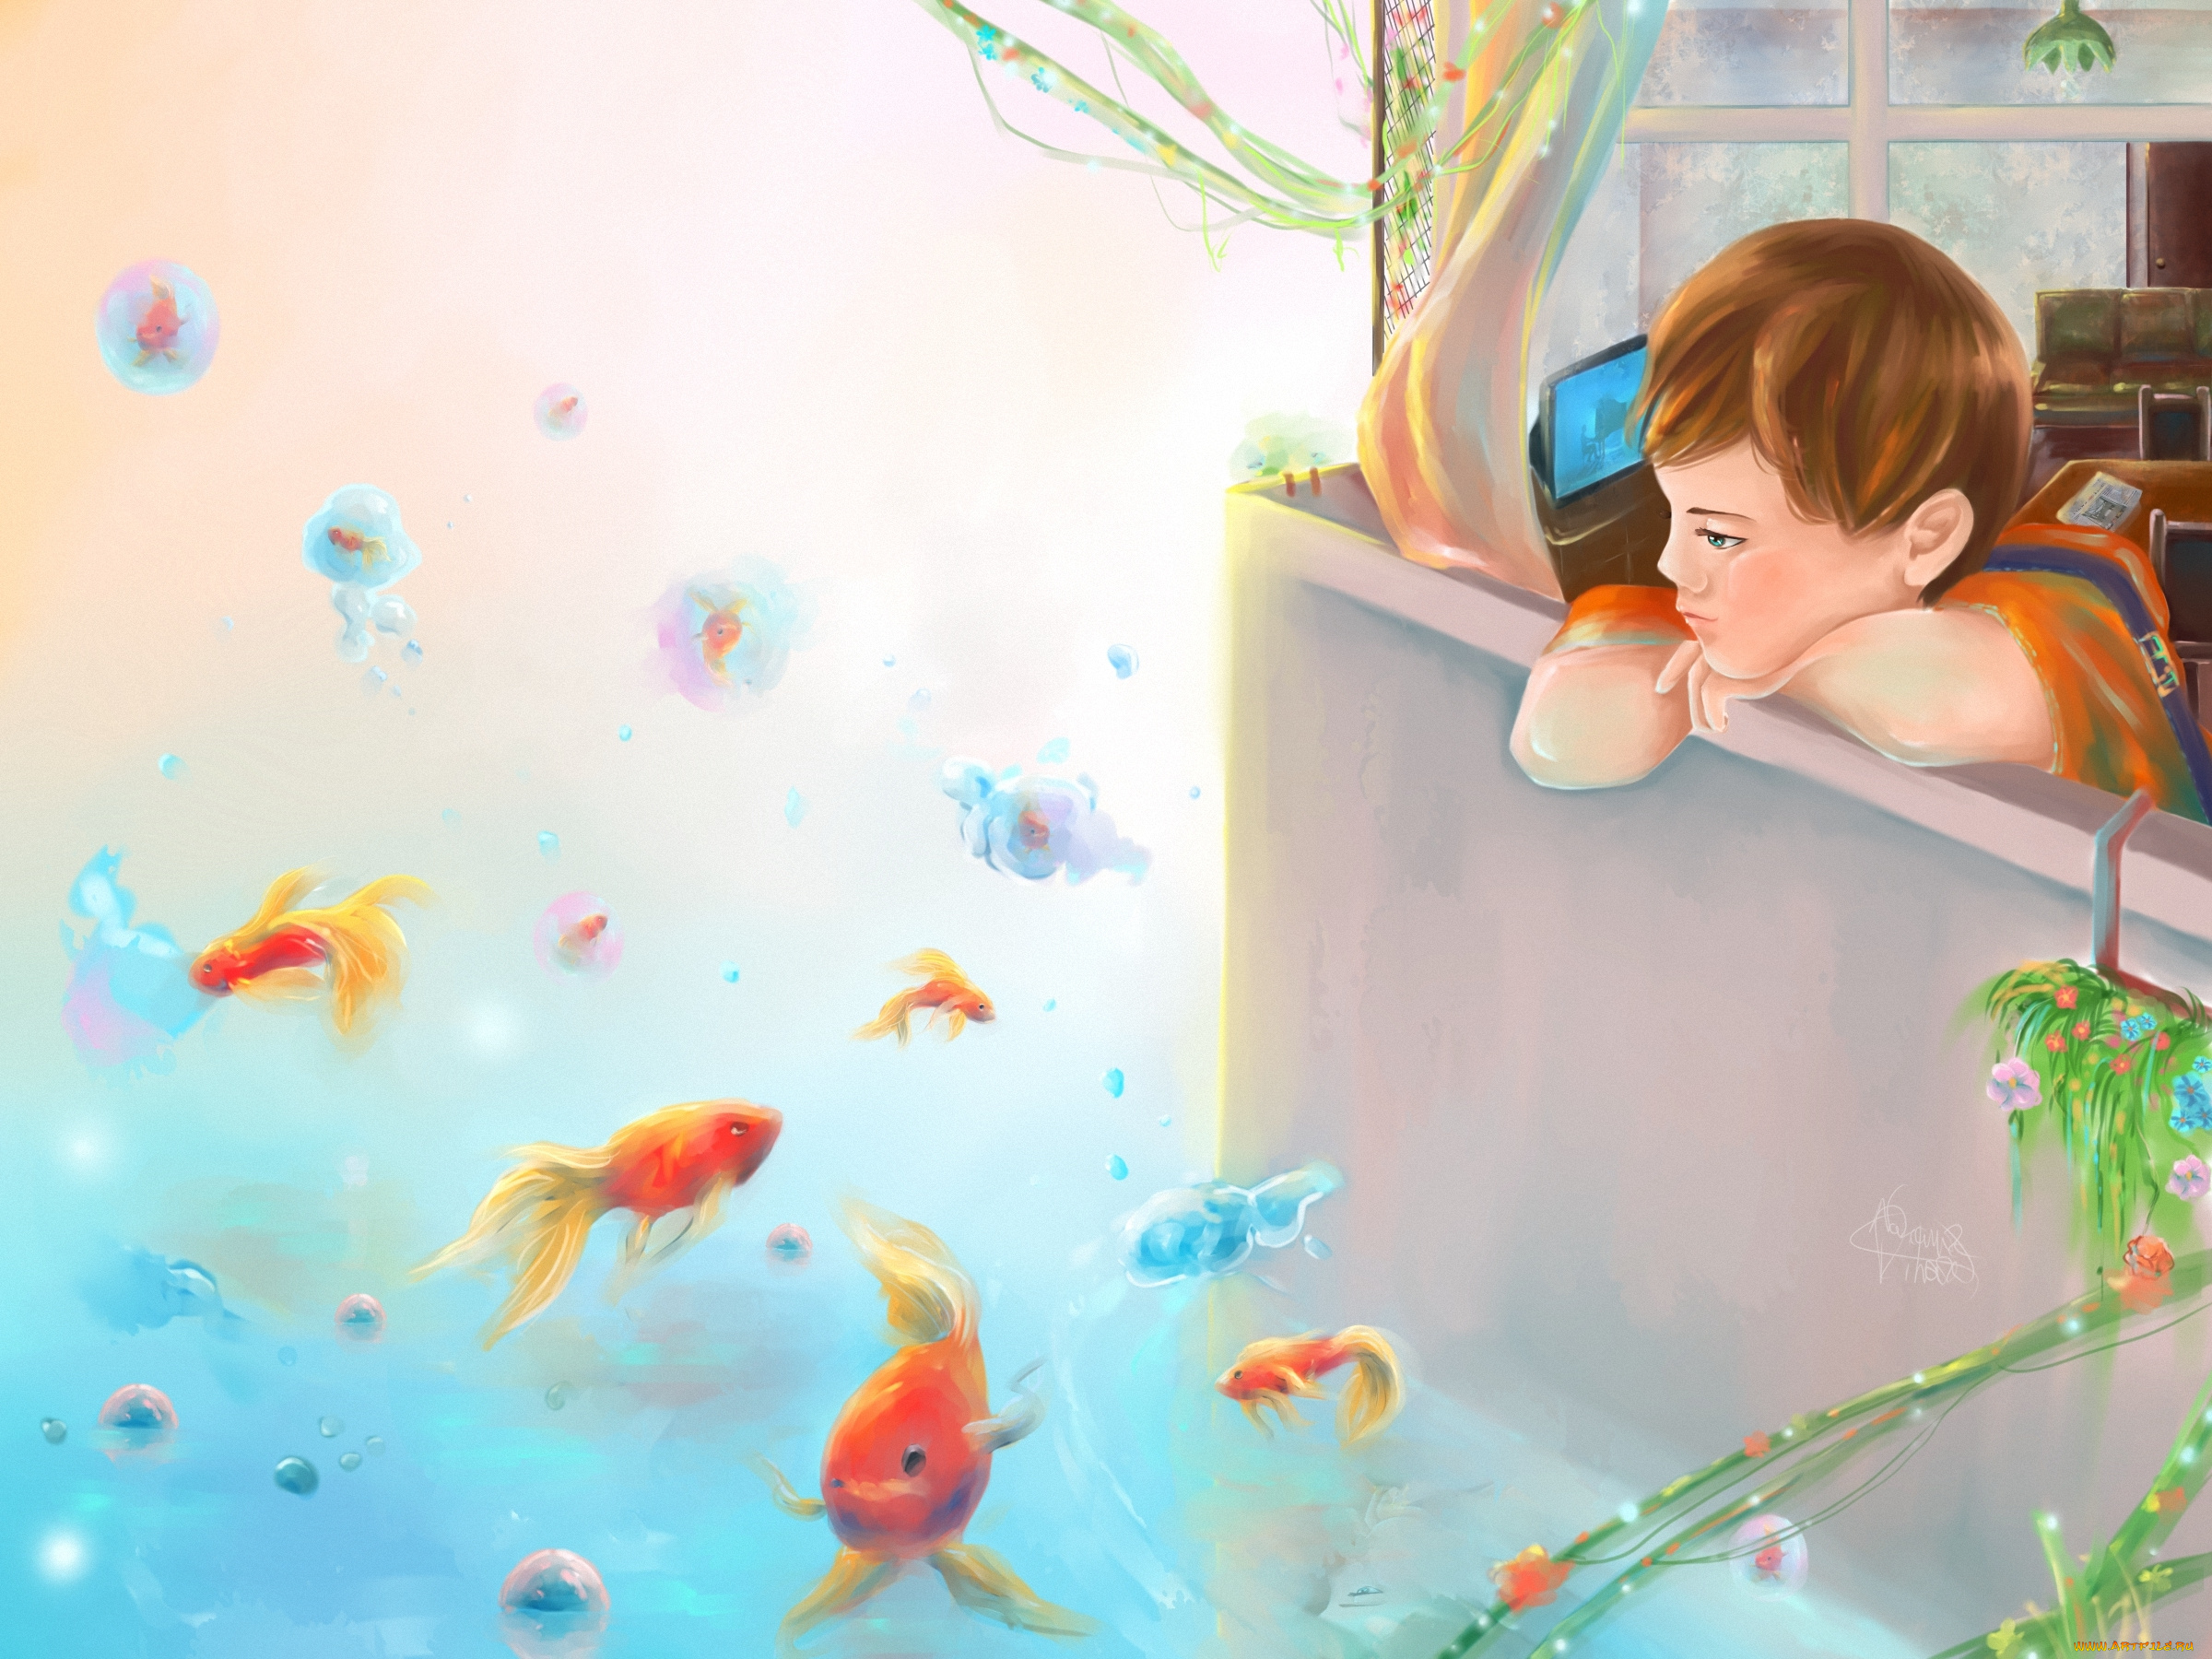 О чем мечтает вода. Ребенок мечтает арт. Мальчик мечтатель. Мечта иллюстрация. Детские обои с рыбками.